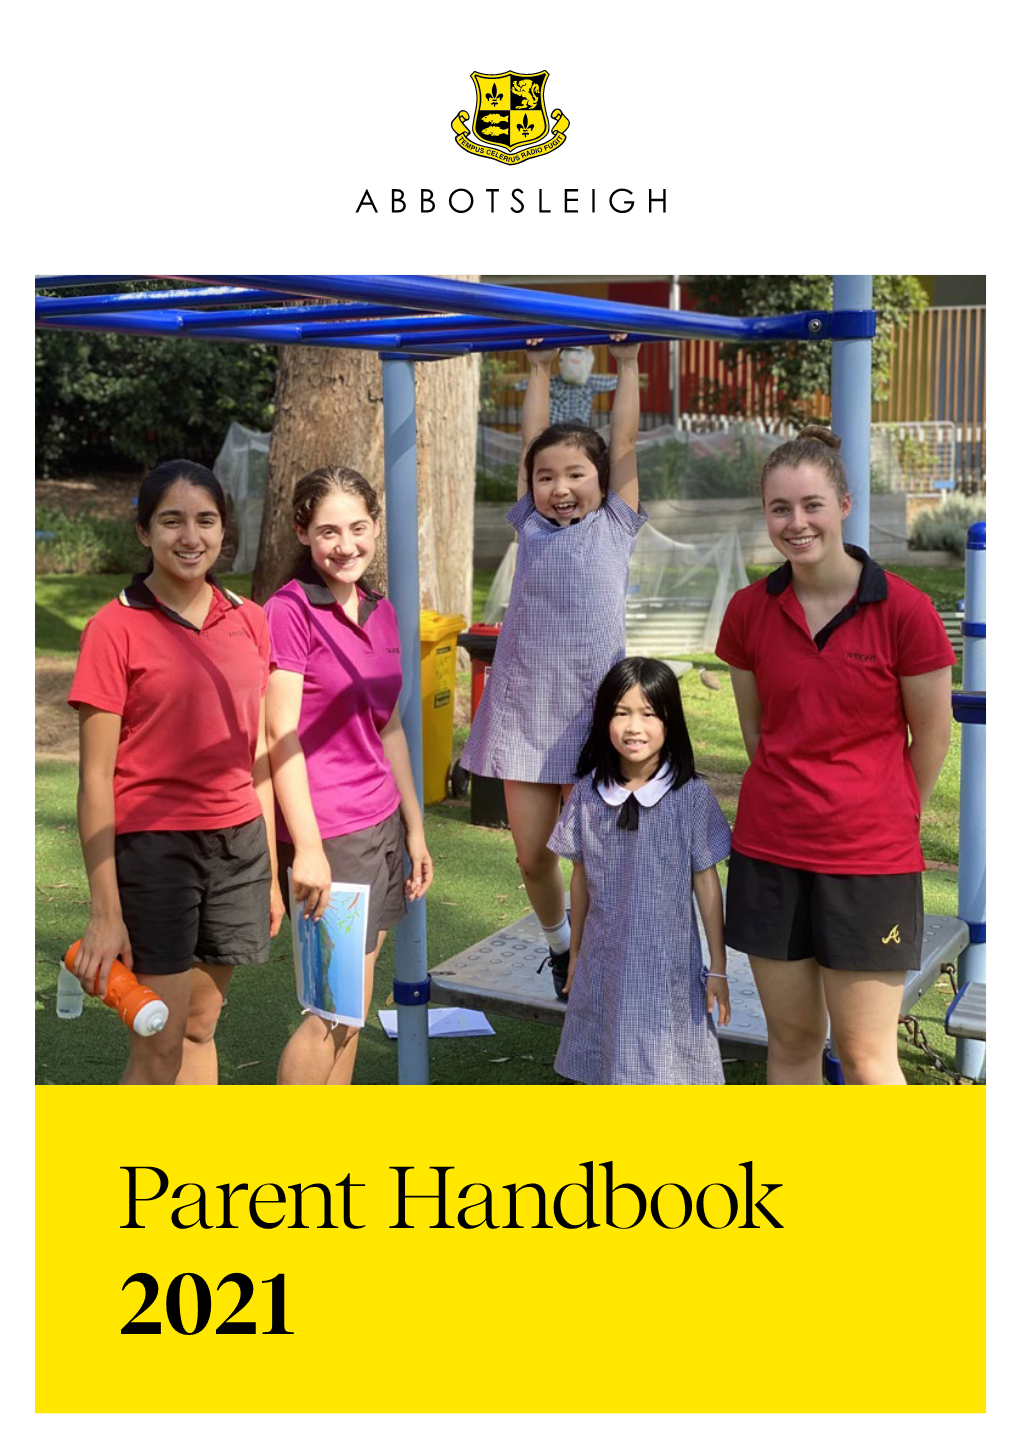 Abbotsleigh Parent Handbook 2021